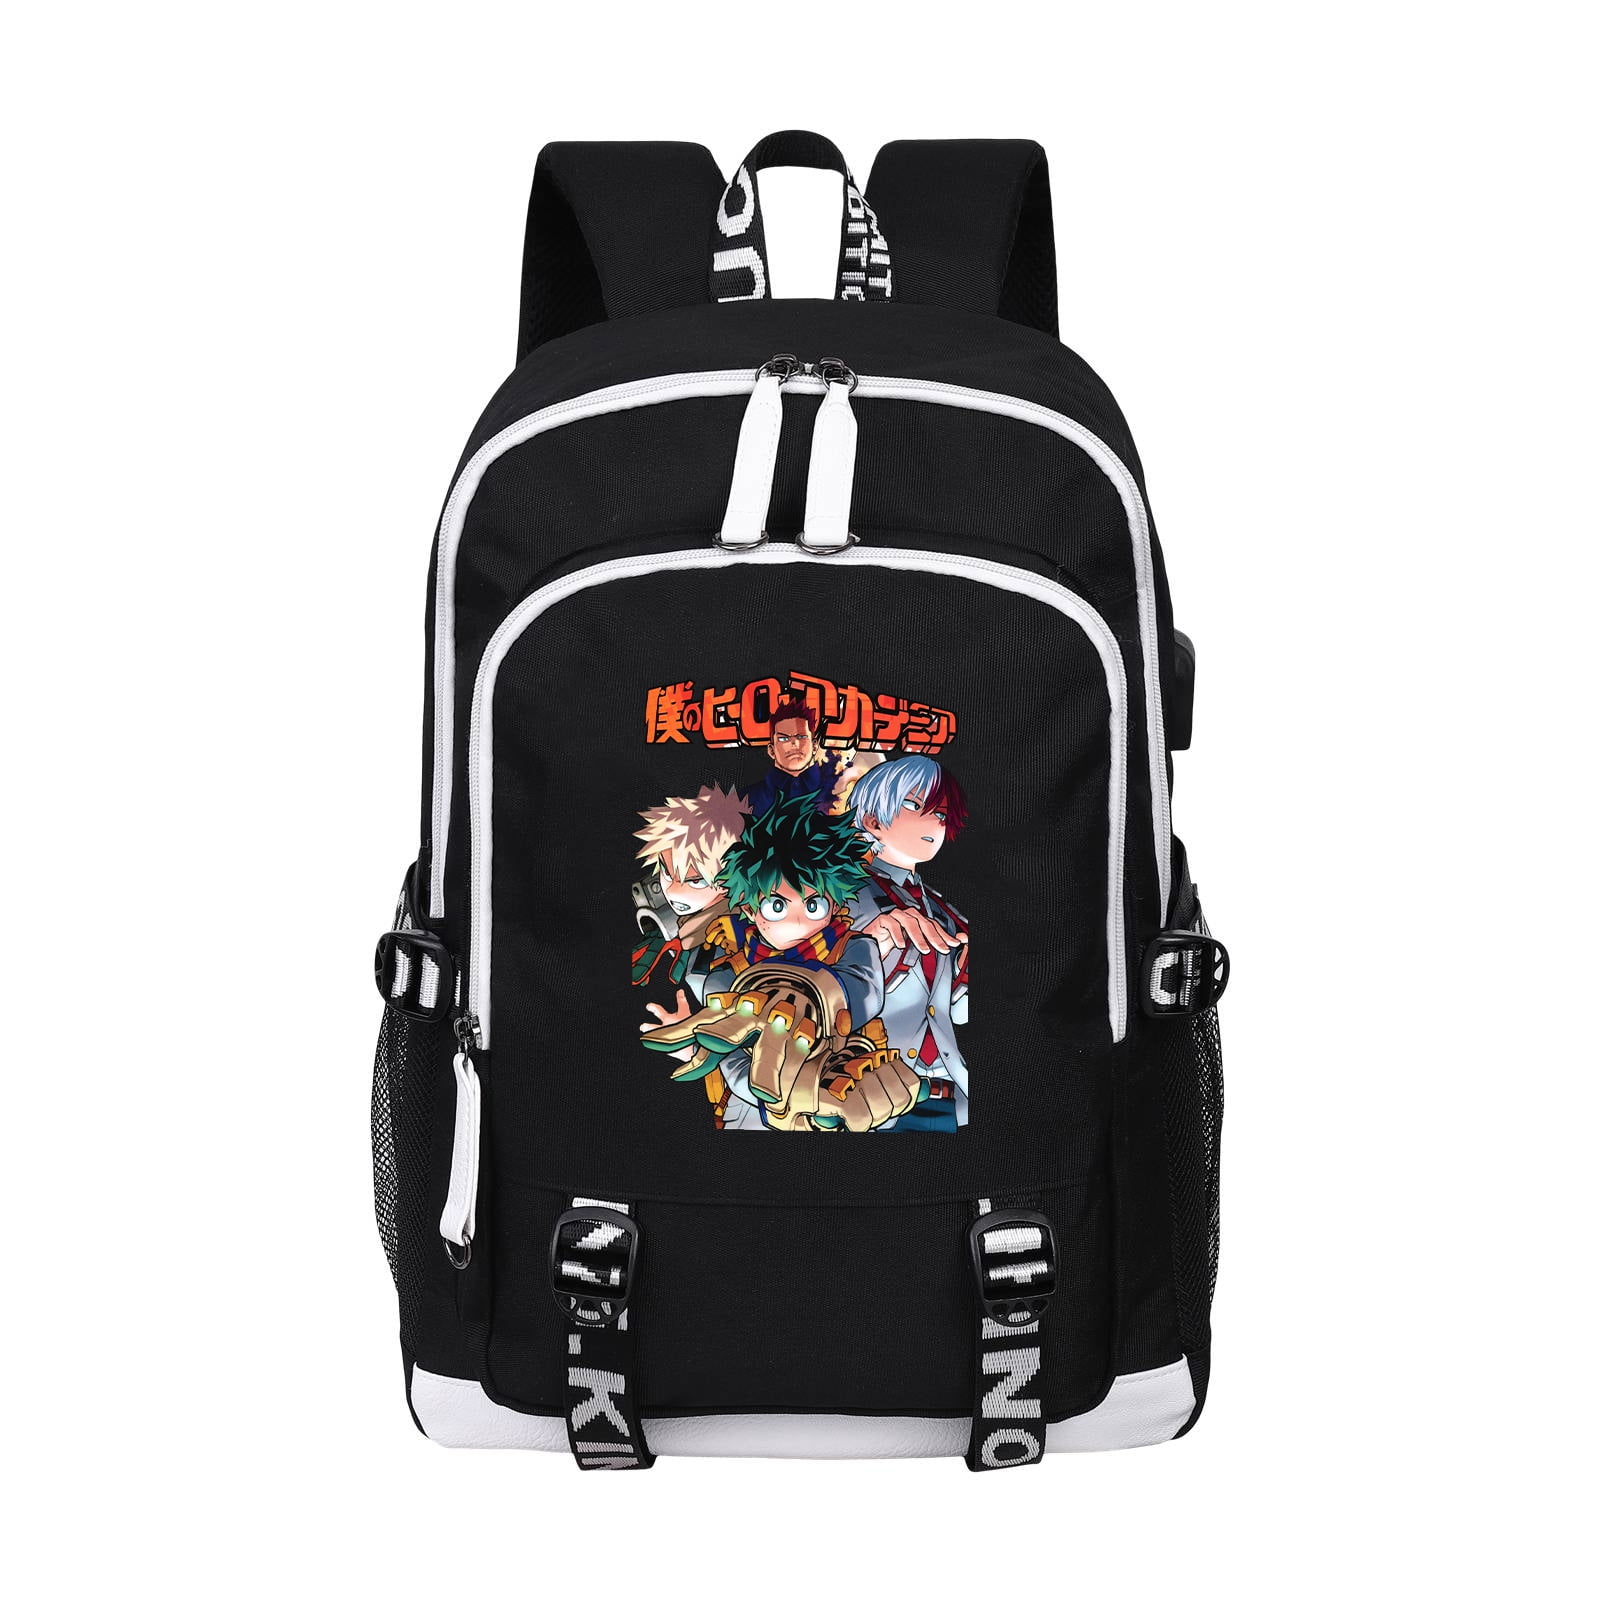 Shoulder Backpack For Boys Girls Rucksack Large Back Pack School College New Bag 